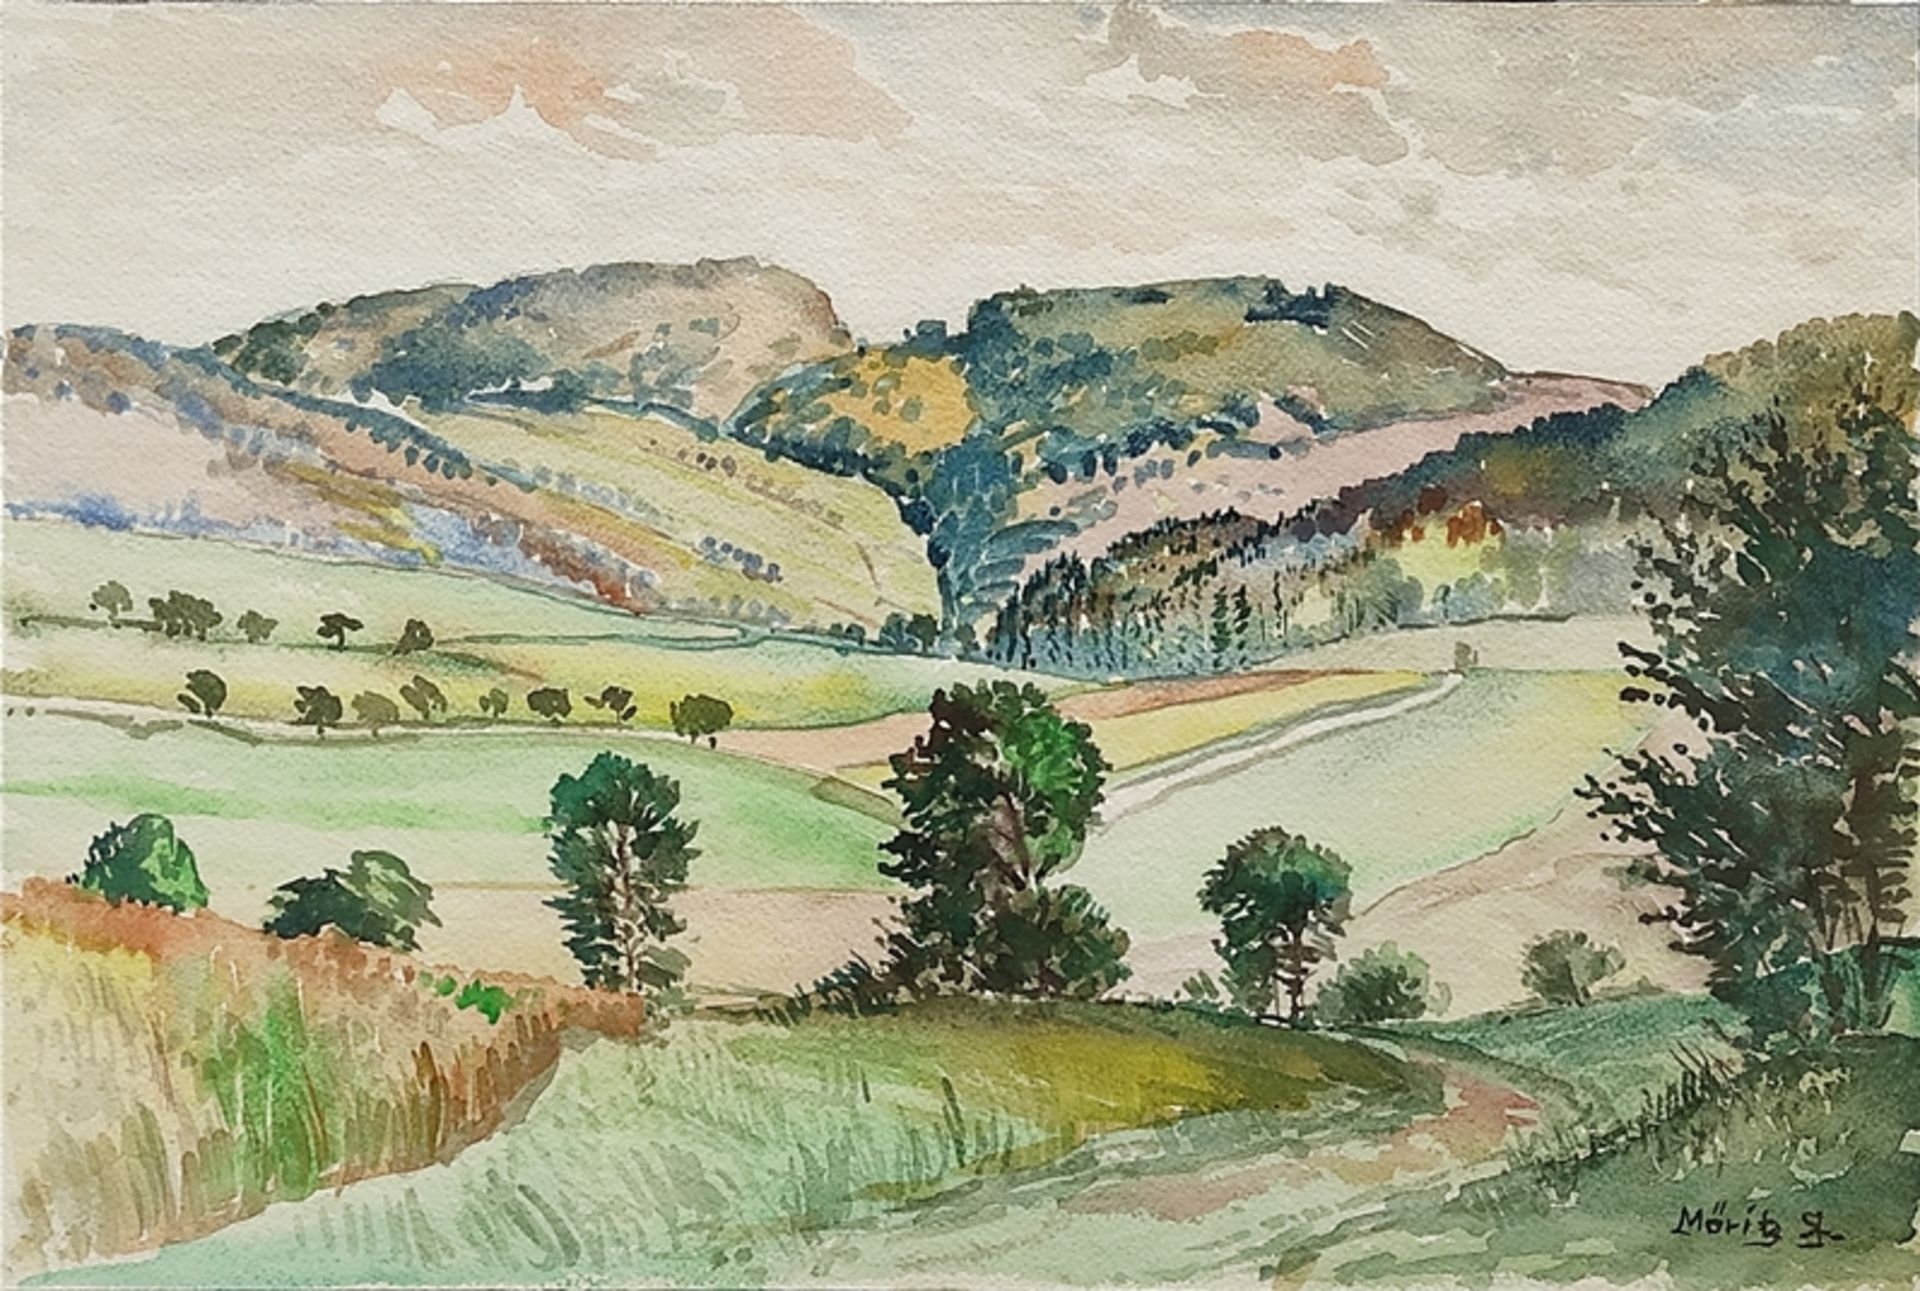 Möritz, Karl (1896 Munich - 1963 Blumenfeld) "Hegaulandschaft" with rolling hills, in the foregroun